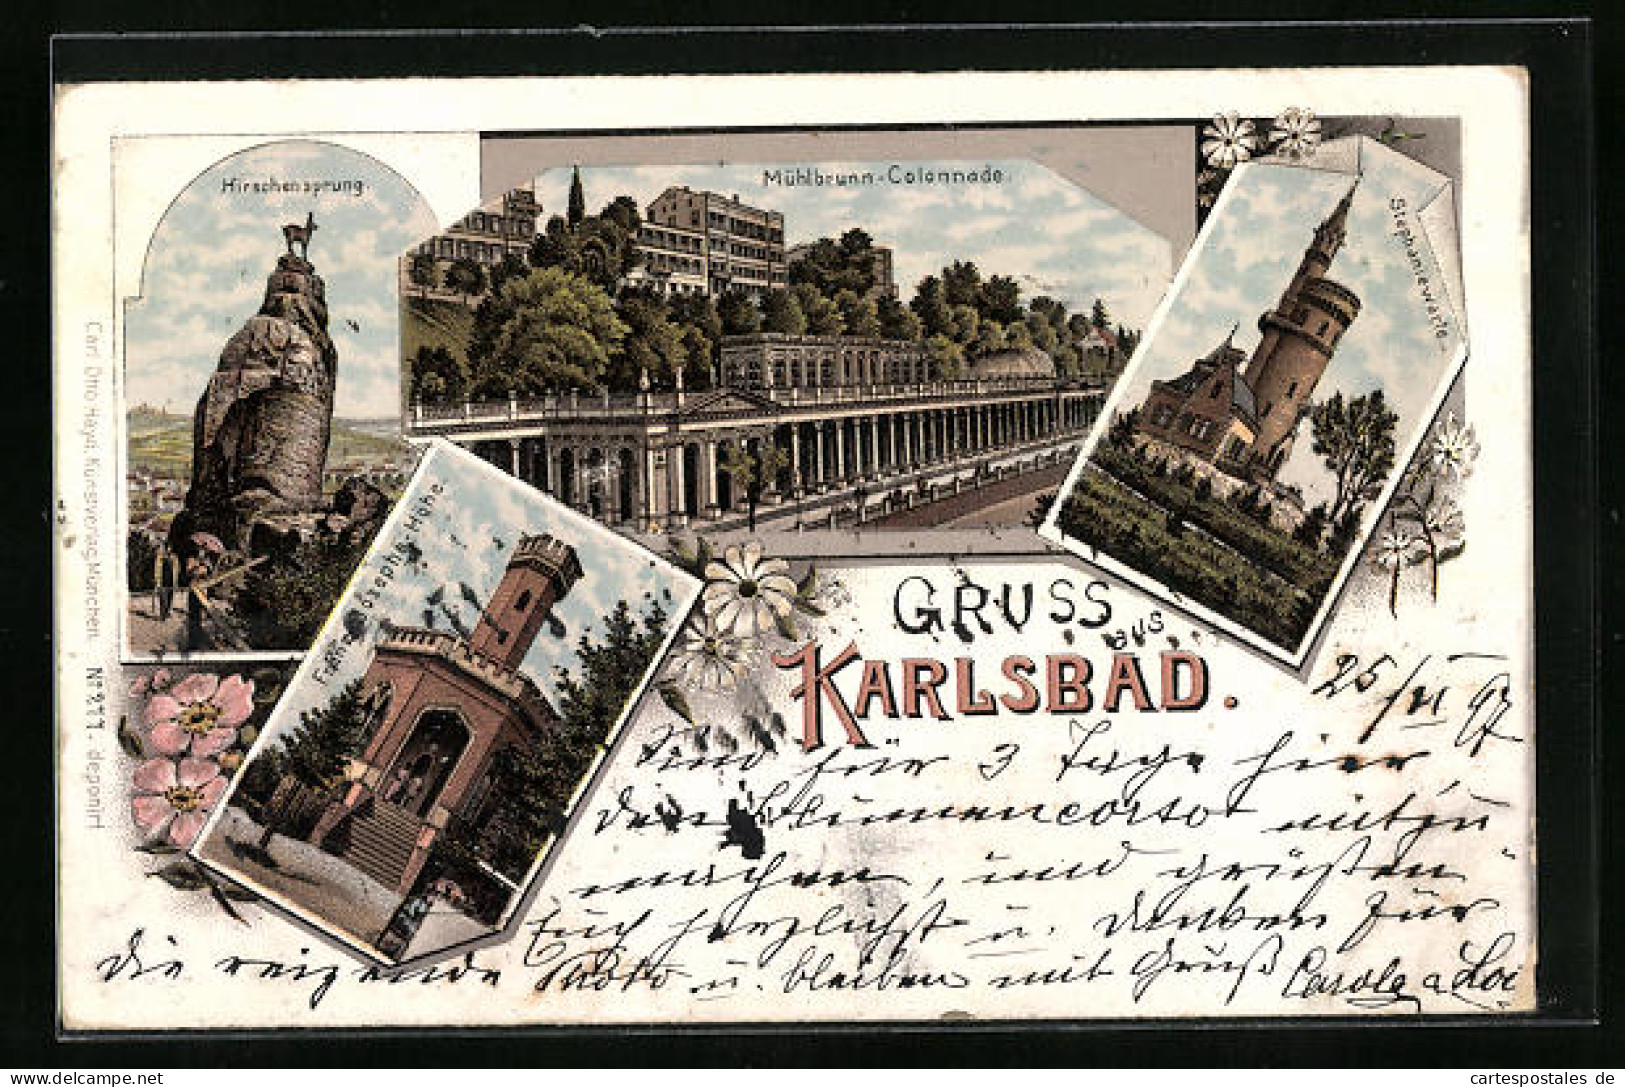 Lithographie Karlsbad, Mühlbrunn-Colonnade, Franz-Josephs-Höhe, Stephaniewarte  - Tchéquie